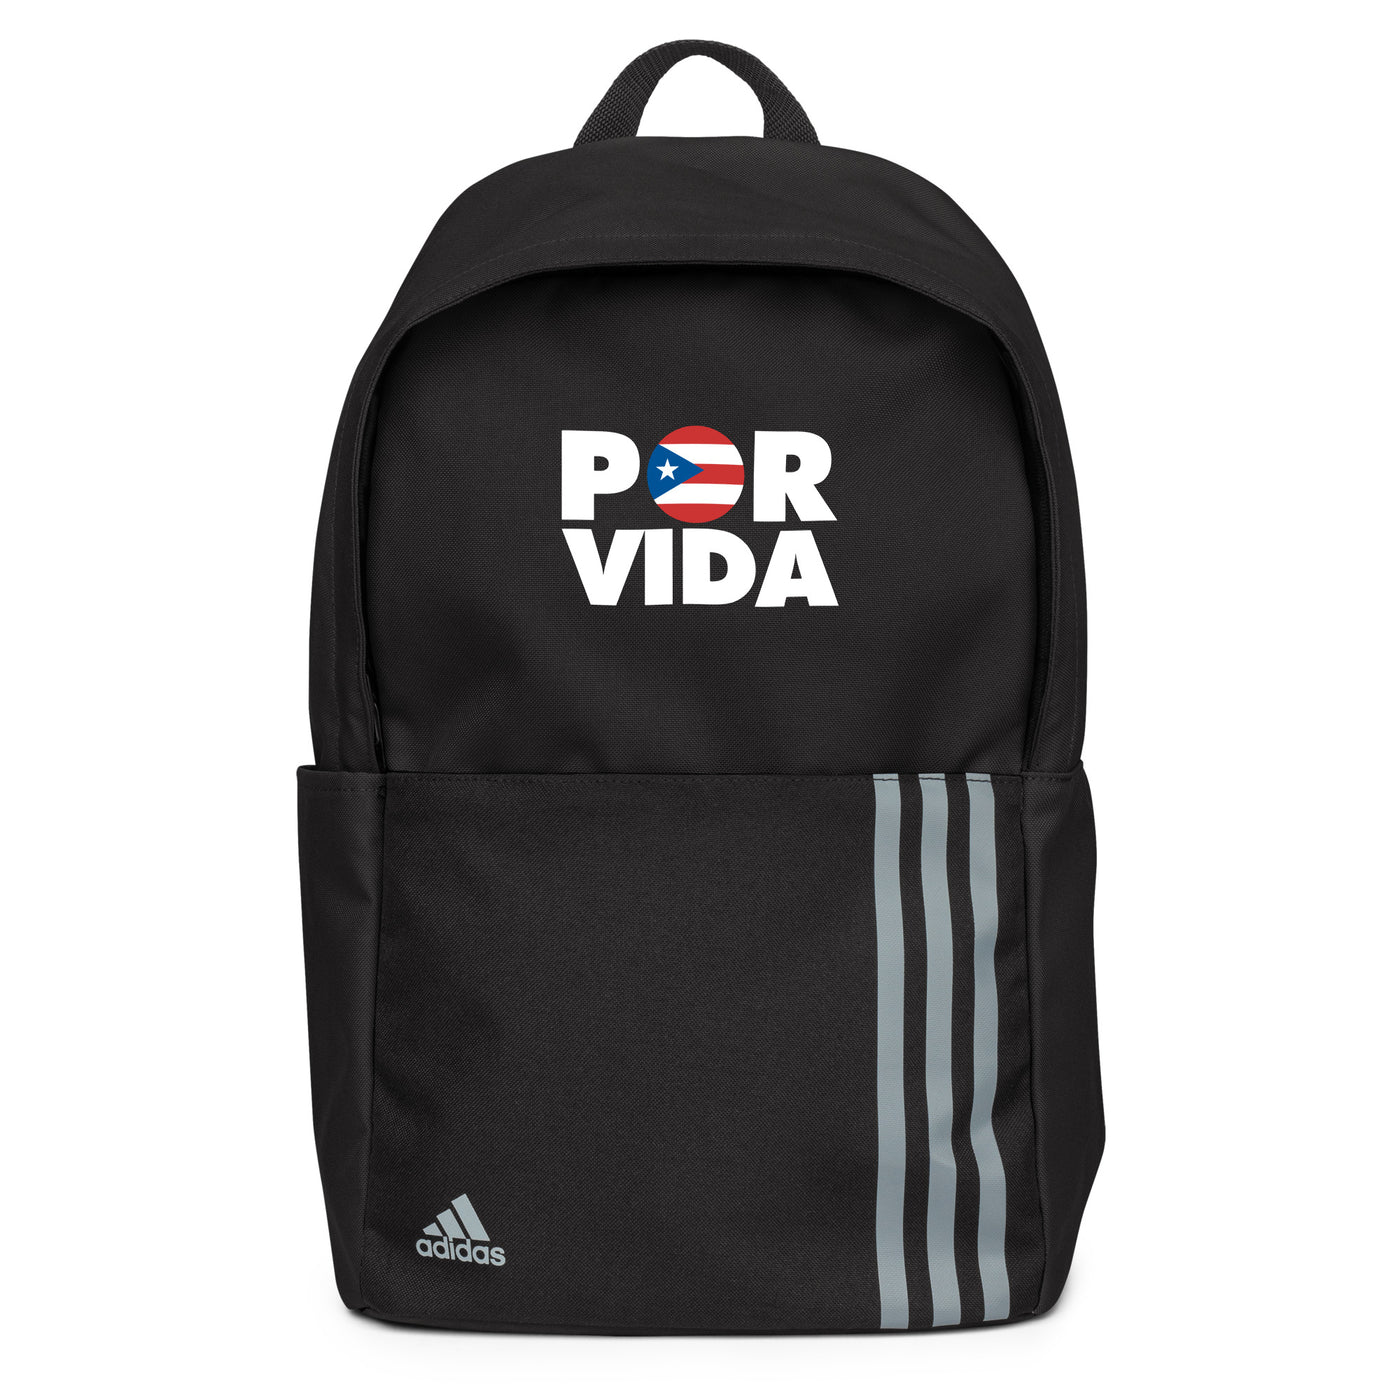 POR VIDA Puerto Rico adidas backpack